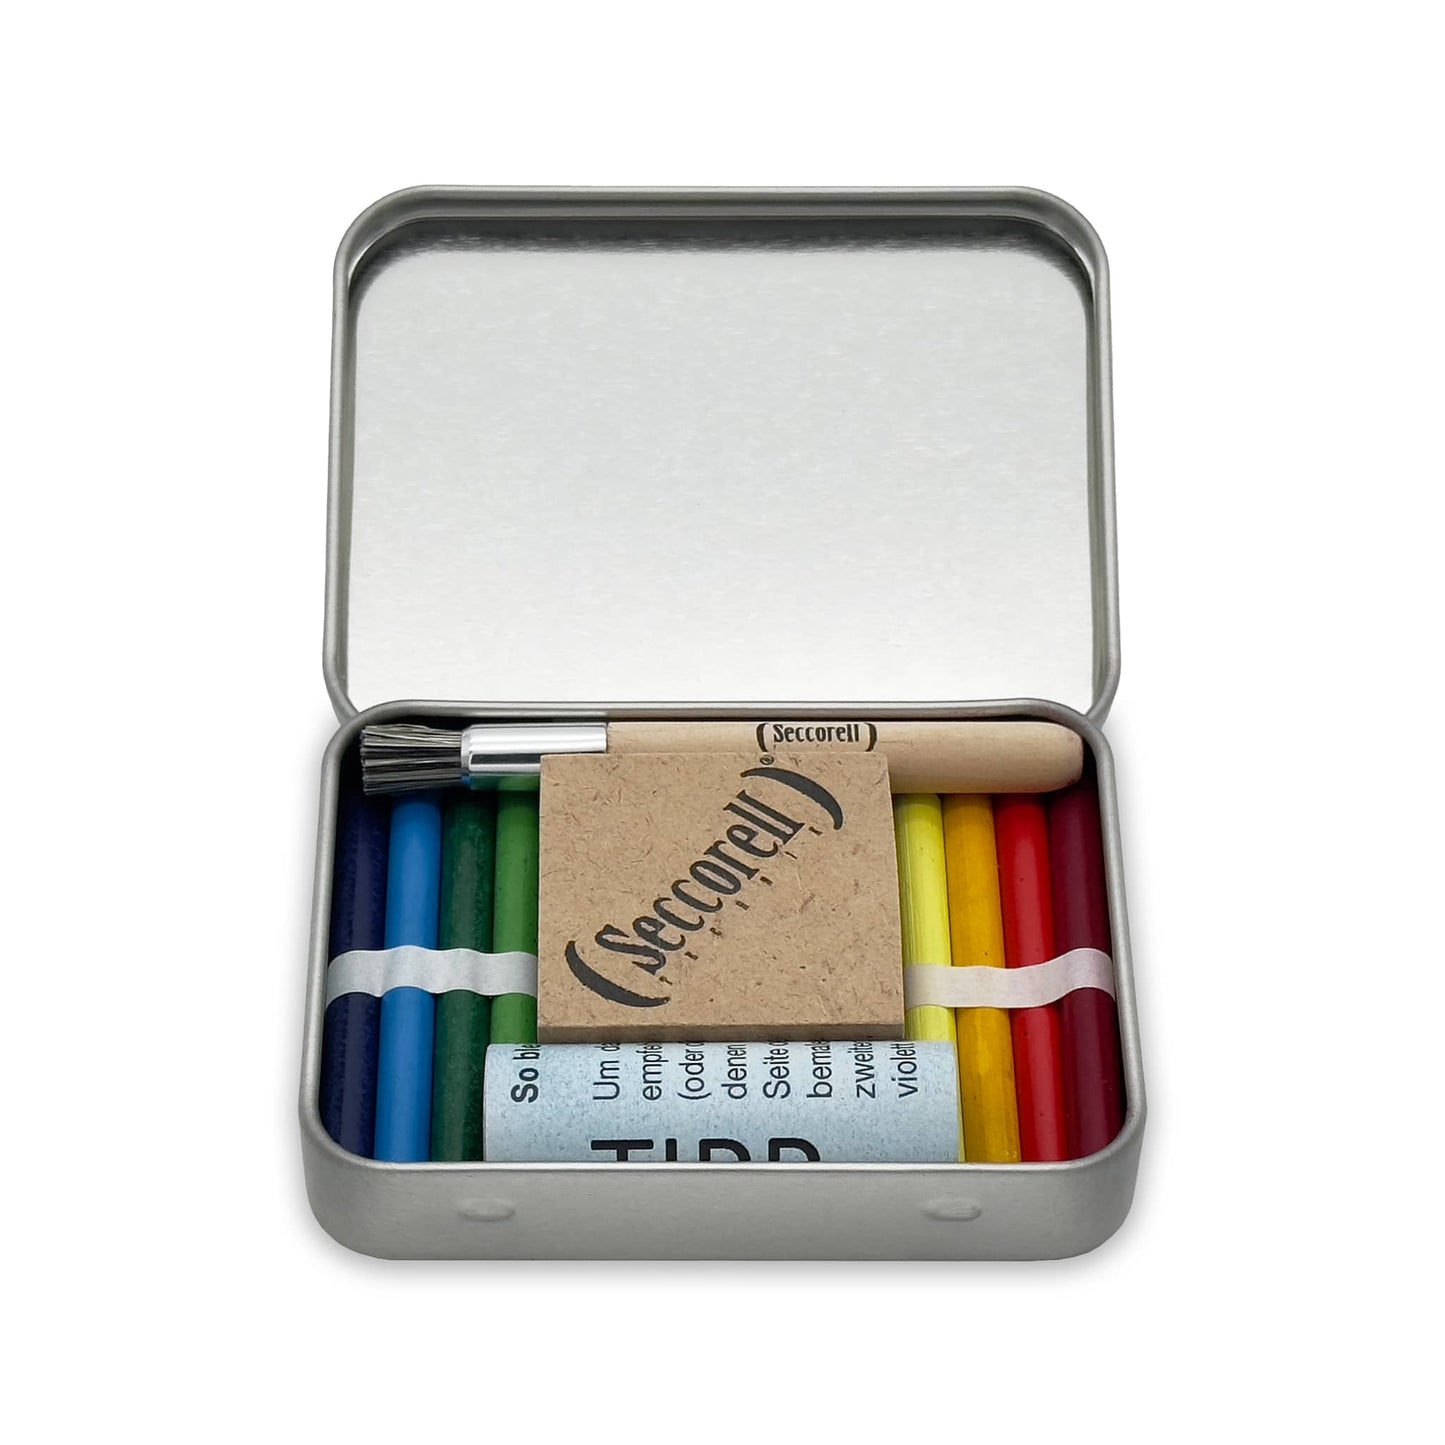 Seccorell Pocket "Hase" geöffnet, enthält 8 Farbstäbchen, einen Reibeblock, eine Reinigungsbürste und einen Radierer, verpackt in einer Metallbox, bereit für kunstvolles Schaffen.